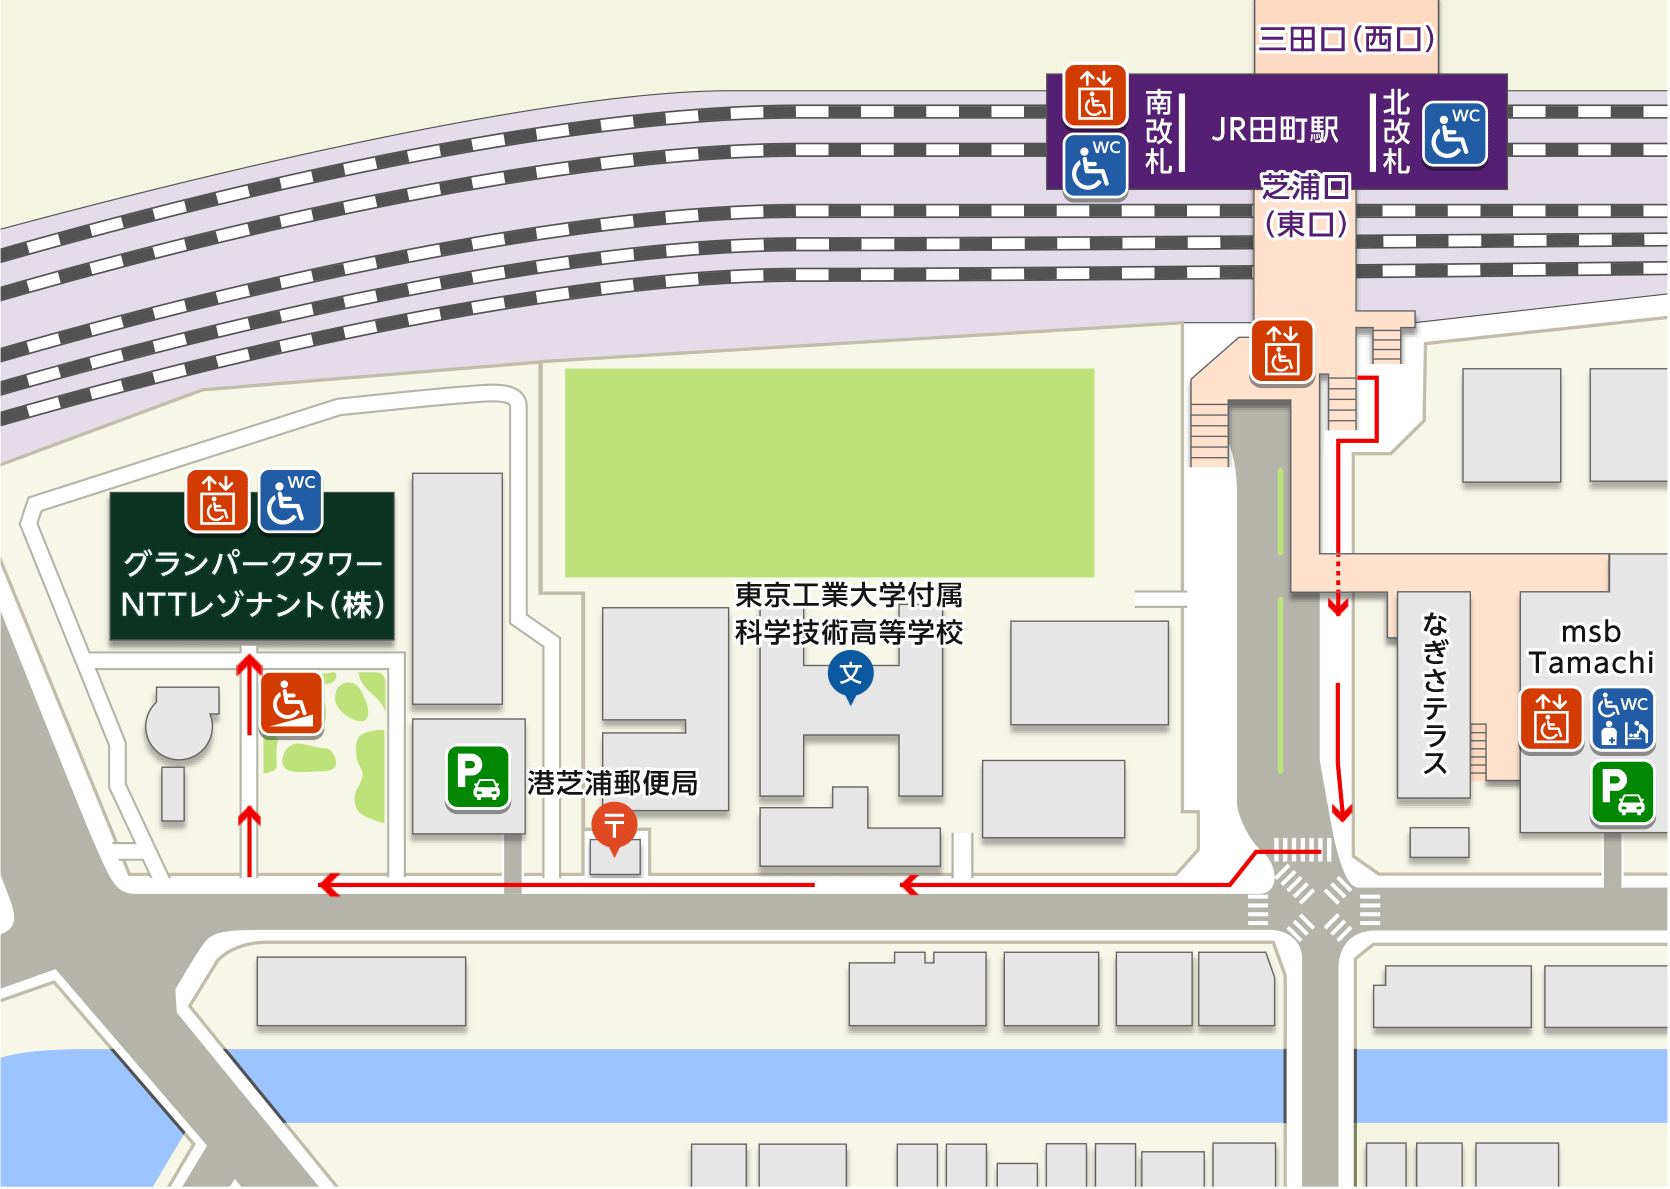 Jr田町駅からnttレゾナント 株 へのバリアフリーアクセス